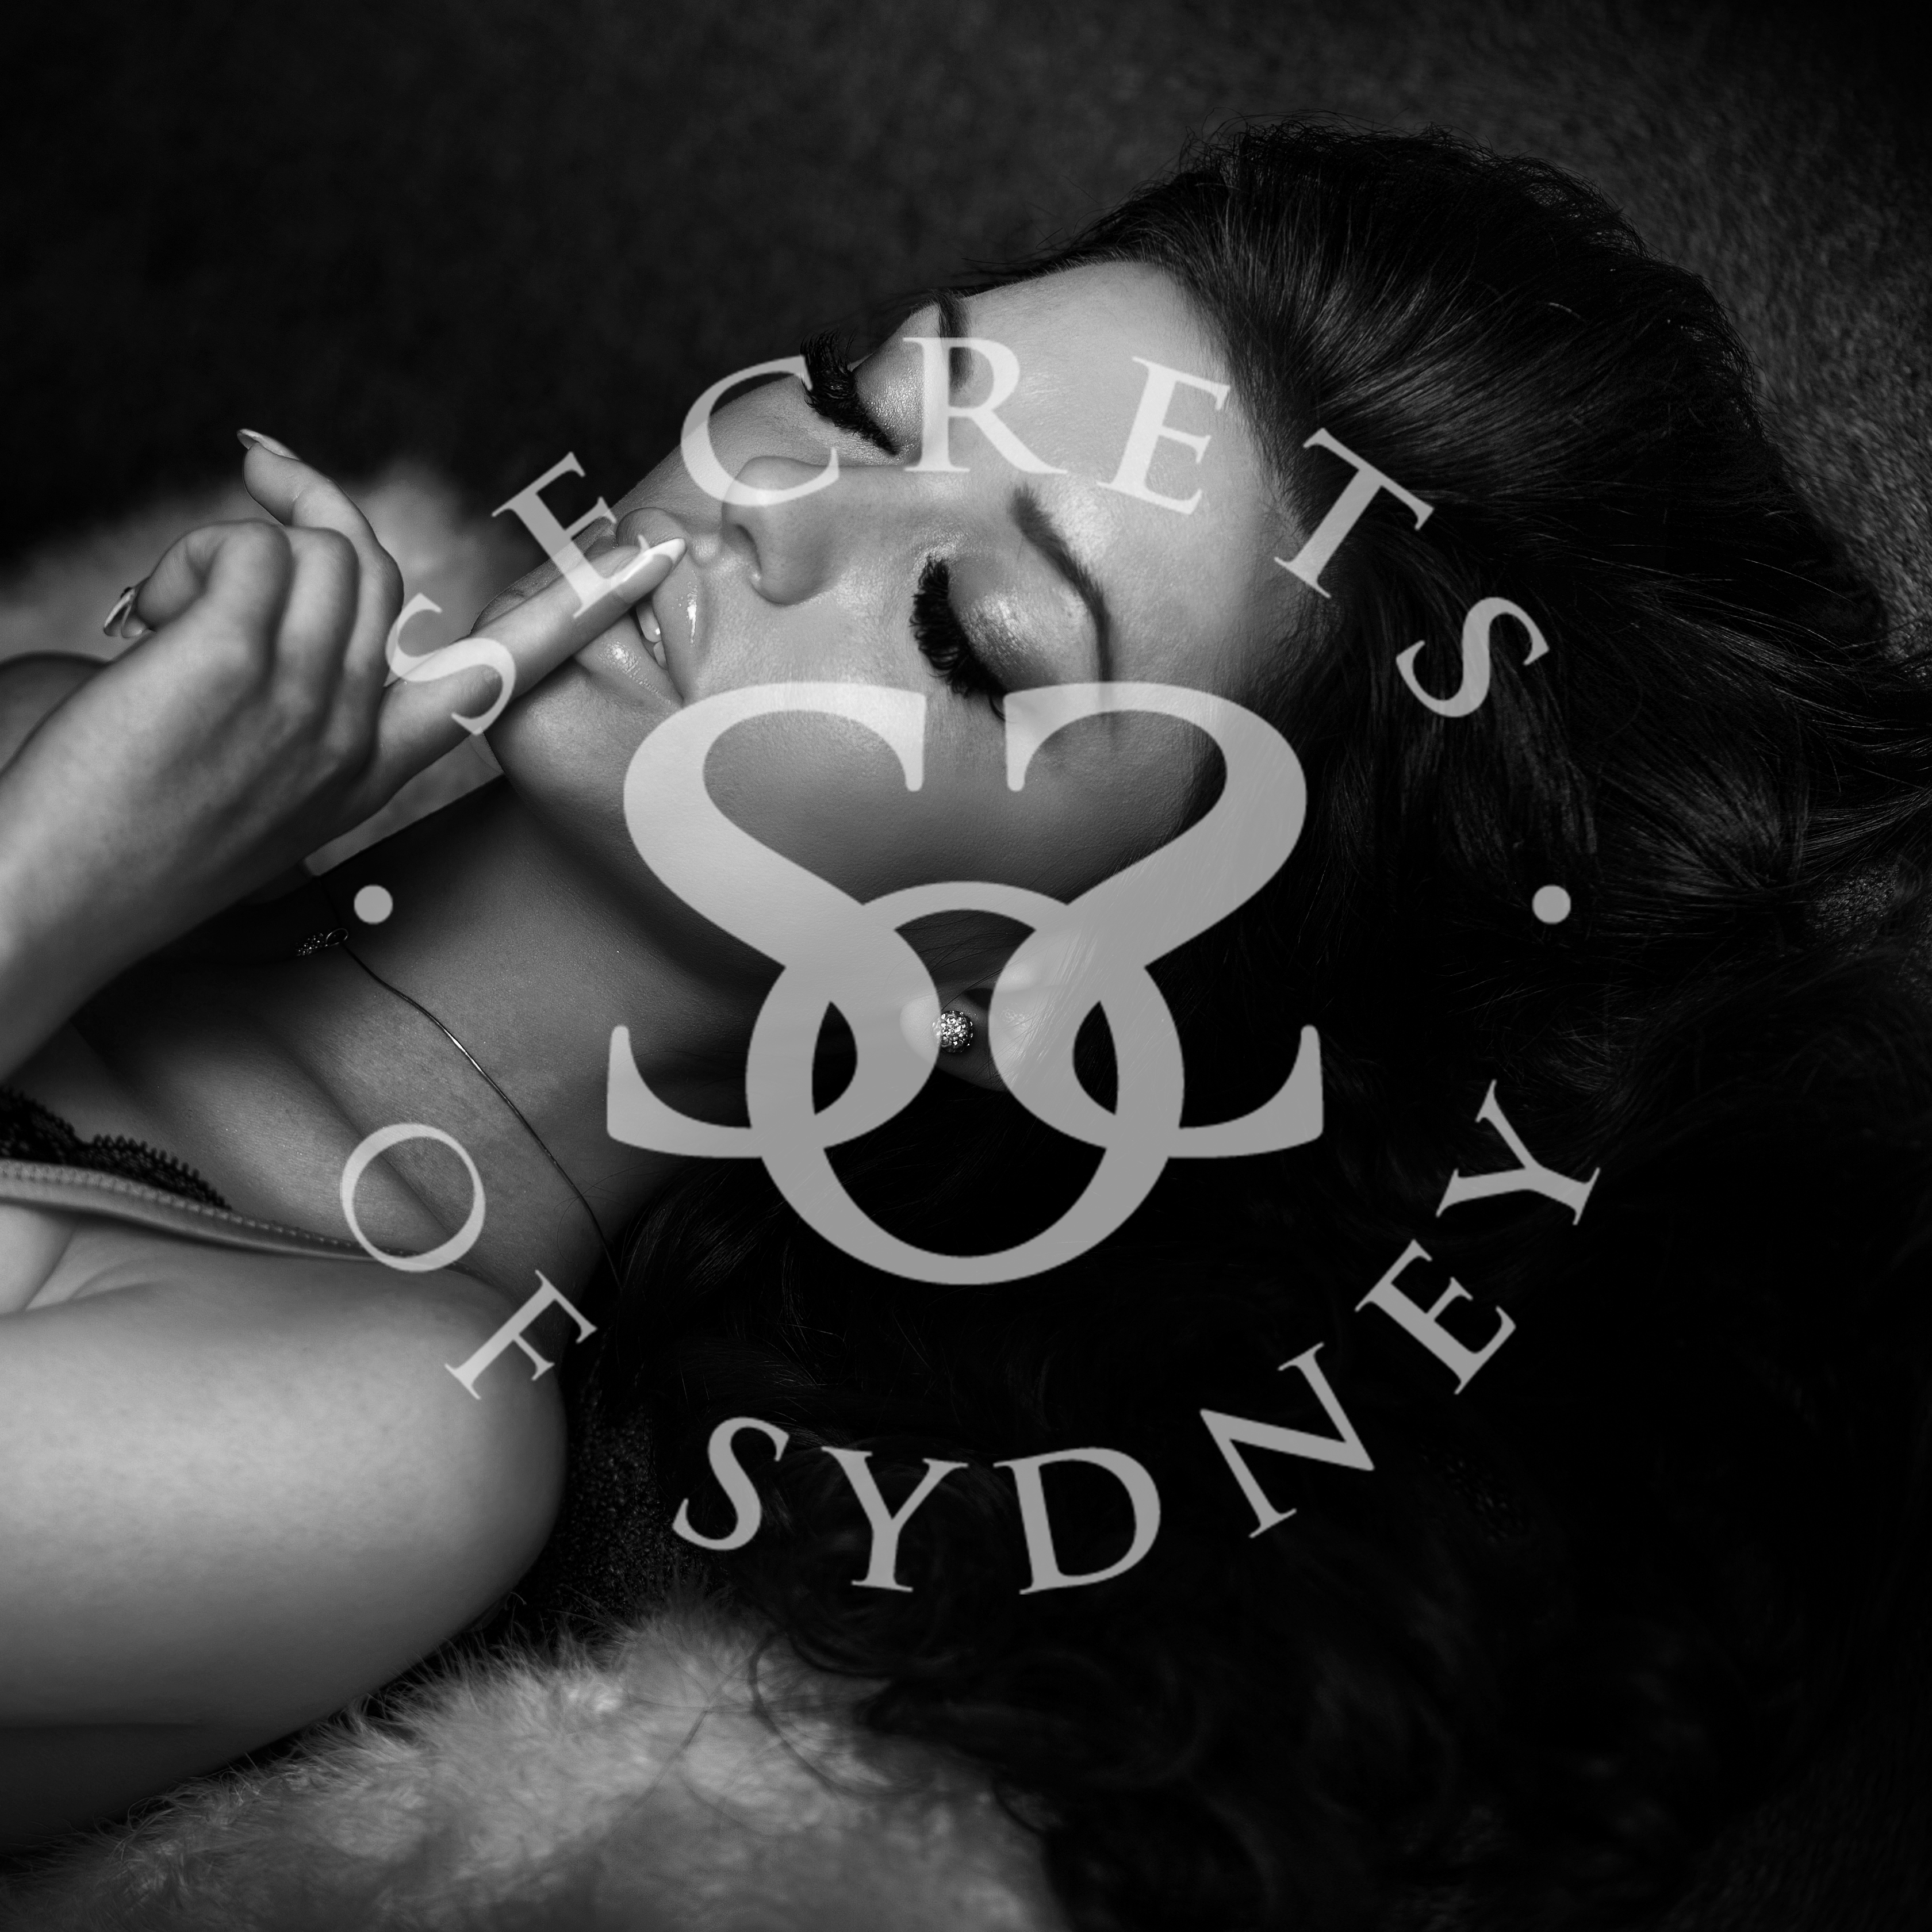 Secrets Of Sydney